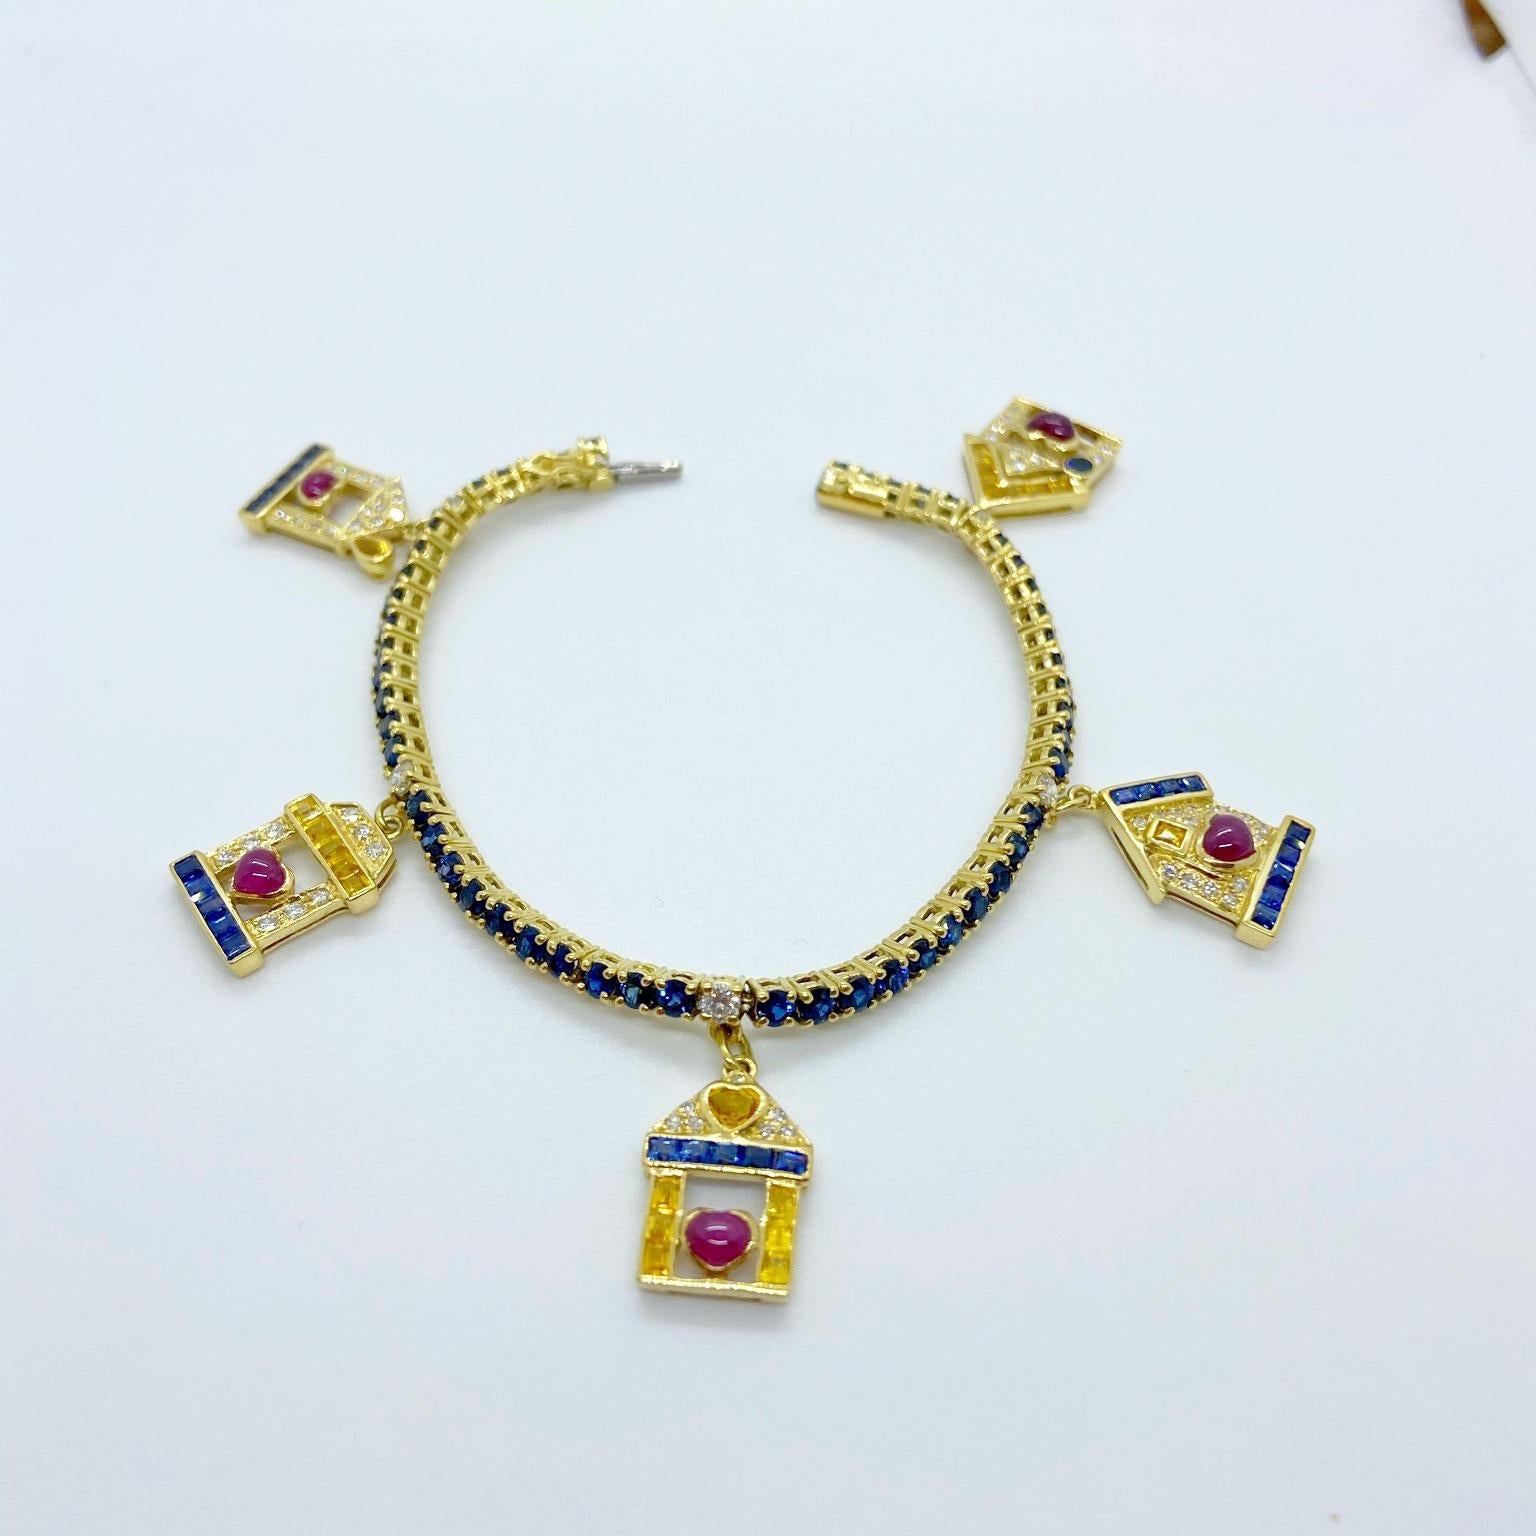 Dieses Armband aus 18-karätigem Gelbgold wurde von den berühmten Juwelieren Sabbadini in Italien entworfen und ist ein einzigartiges Stück, das die Botschaft 